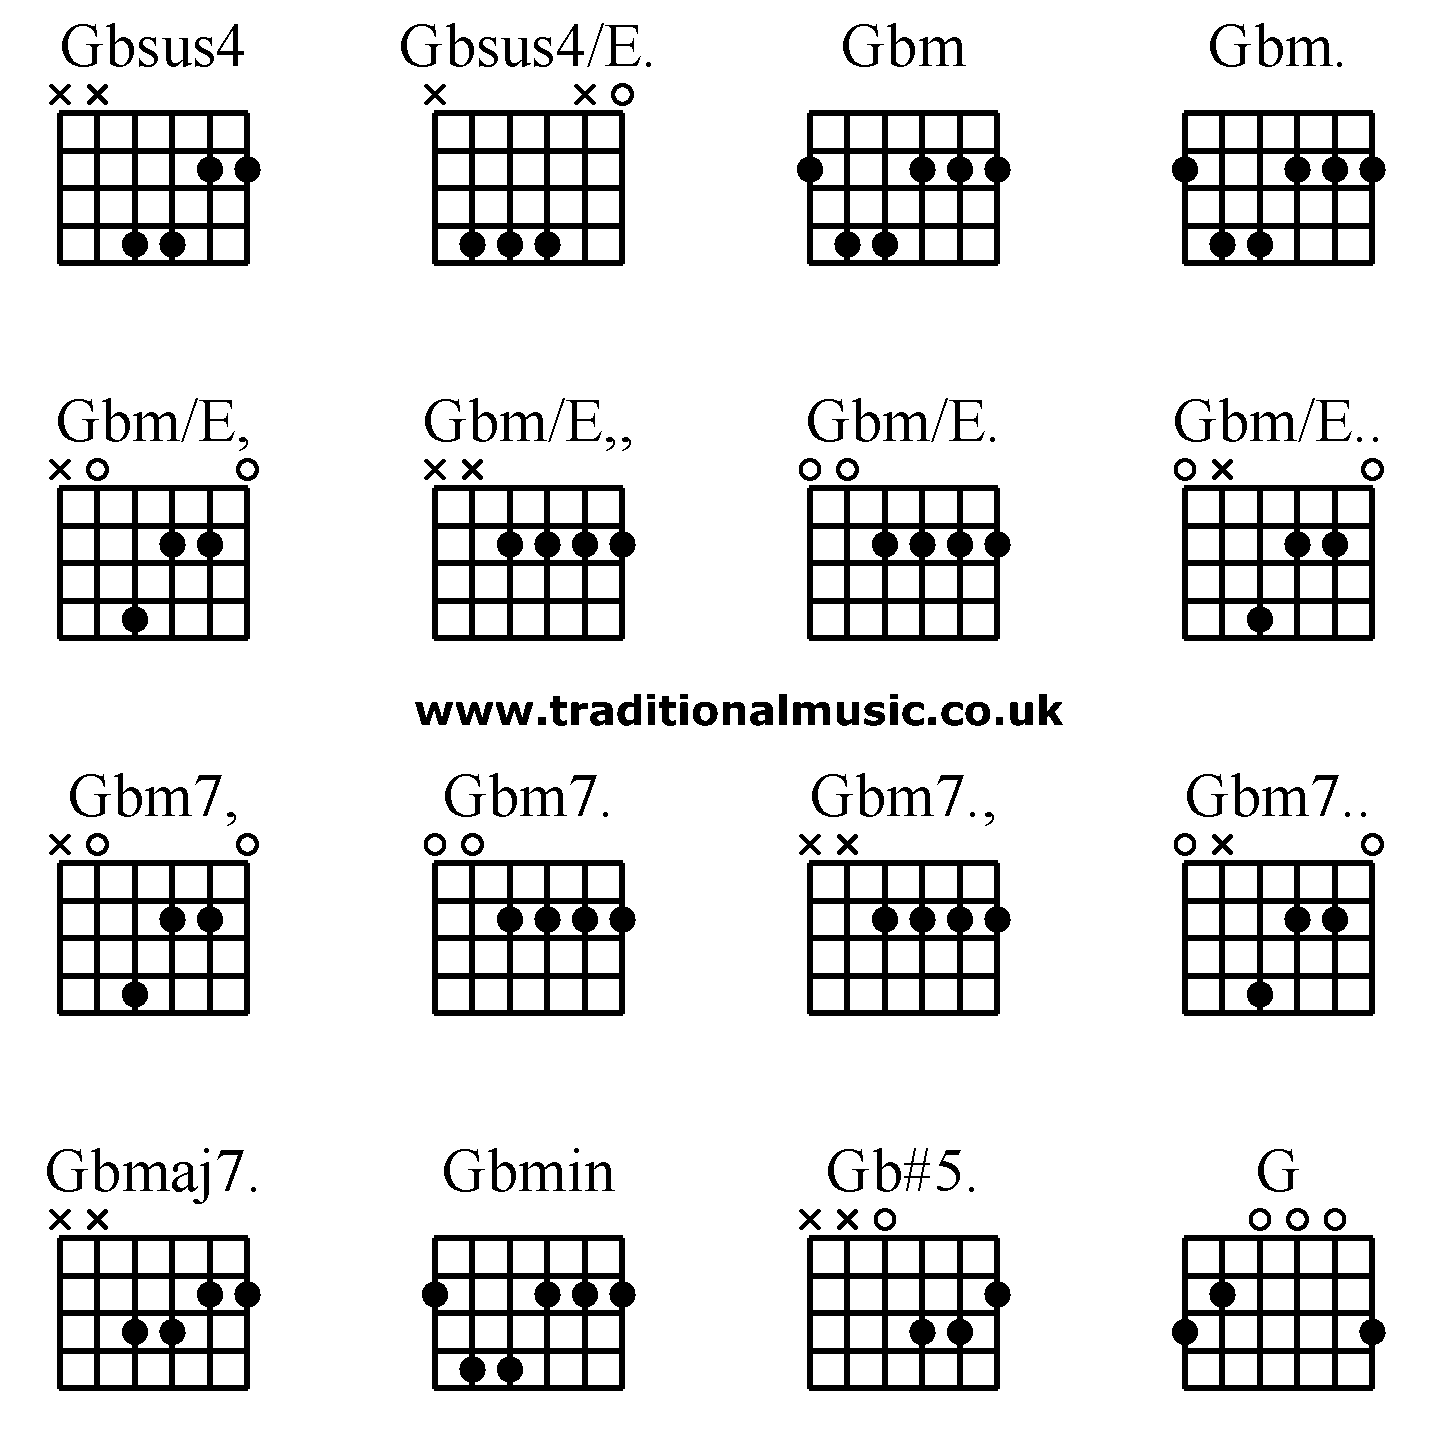 Advanced guitar chords:Gbsus4 Gbsus4/E. Gbm Gbm. Gbm/E, Gbm/E,, Gbm/E. Gbm/E.. Gbm7, Gbm7. Gbm7., Gbm7.. Gbmaj7. Gbmin Gb#5. G